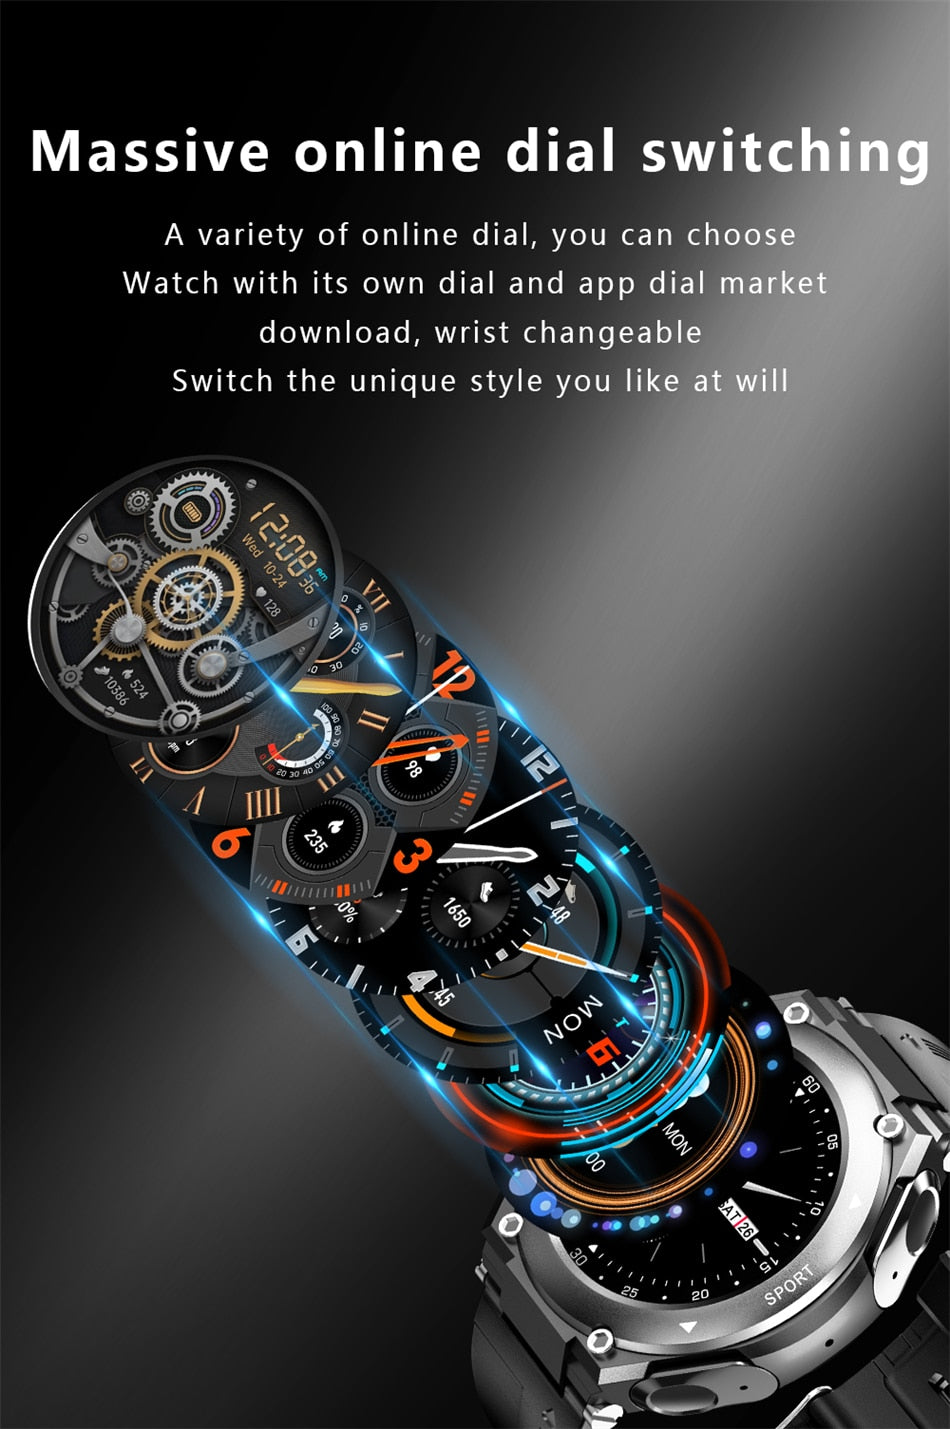 T92 Smart Watch Reloj Deportivo